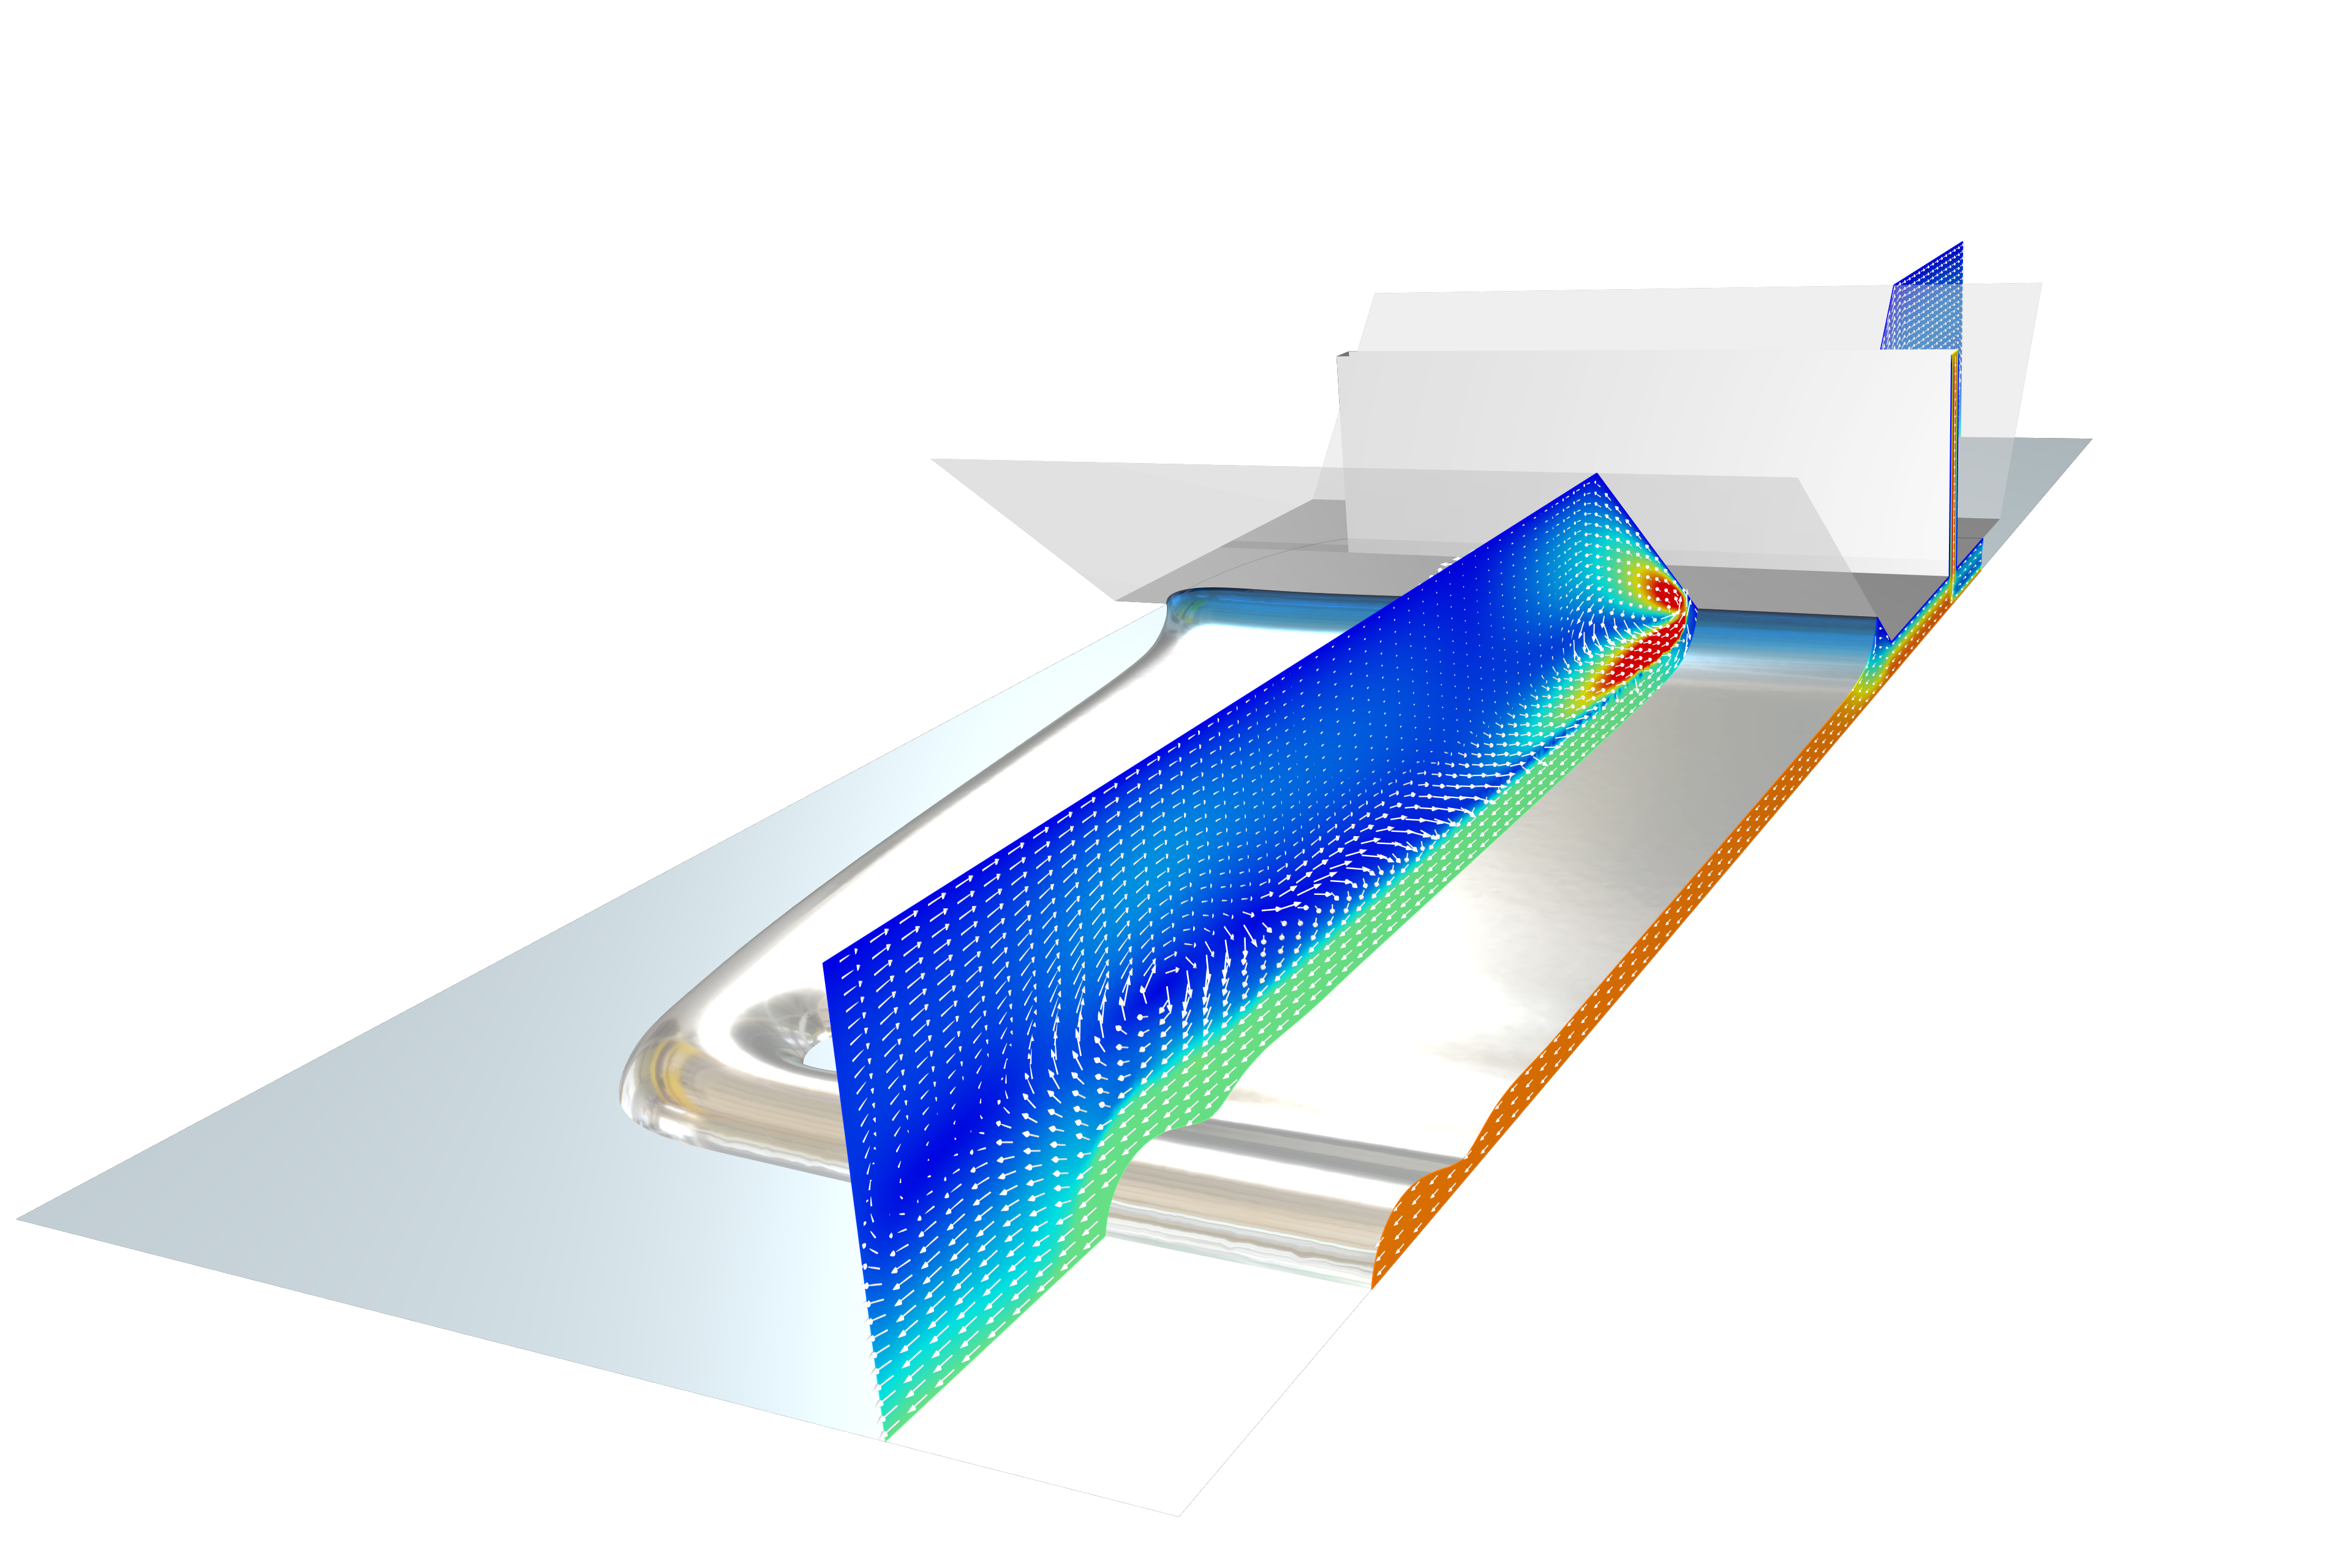 Modell eines Schlitzdüsen-Beschichtungsprozesses in Metallic-Grau mit einem Rainbow-Slice-Plot.